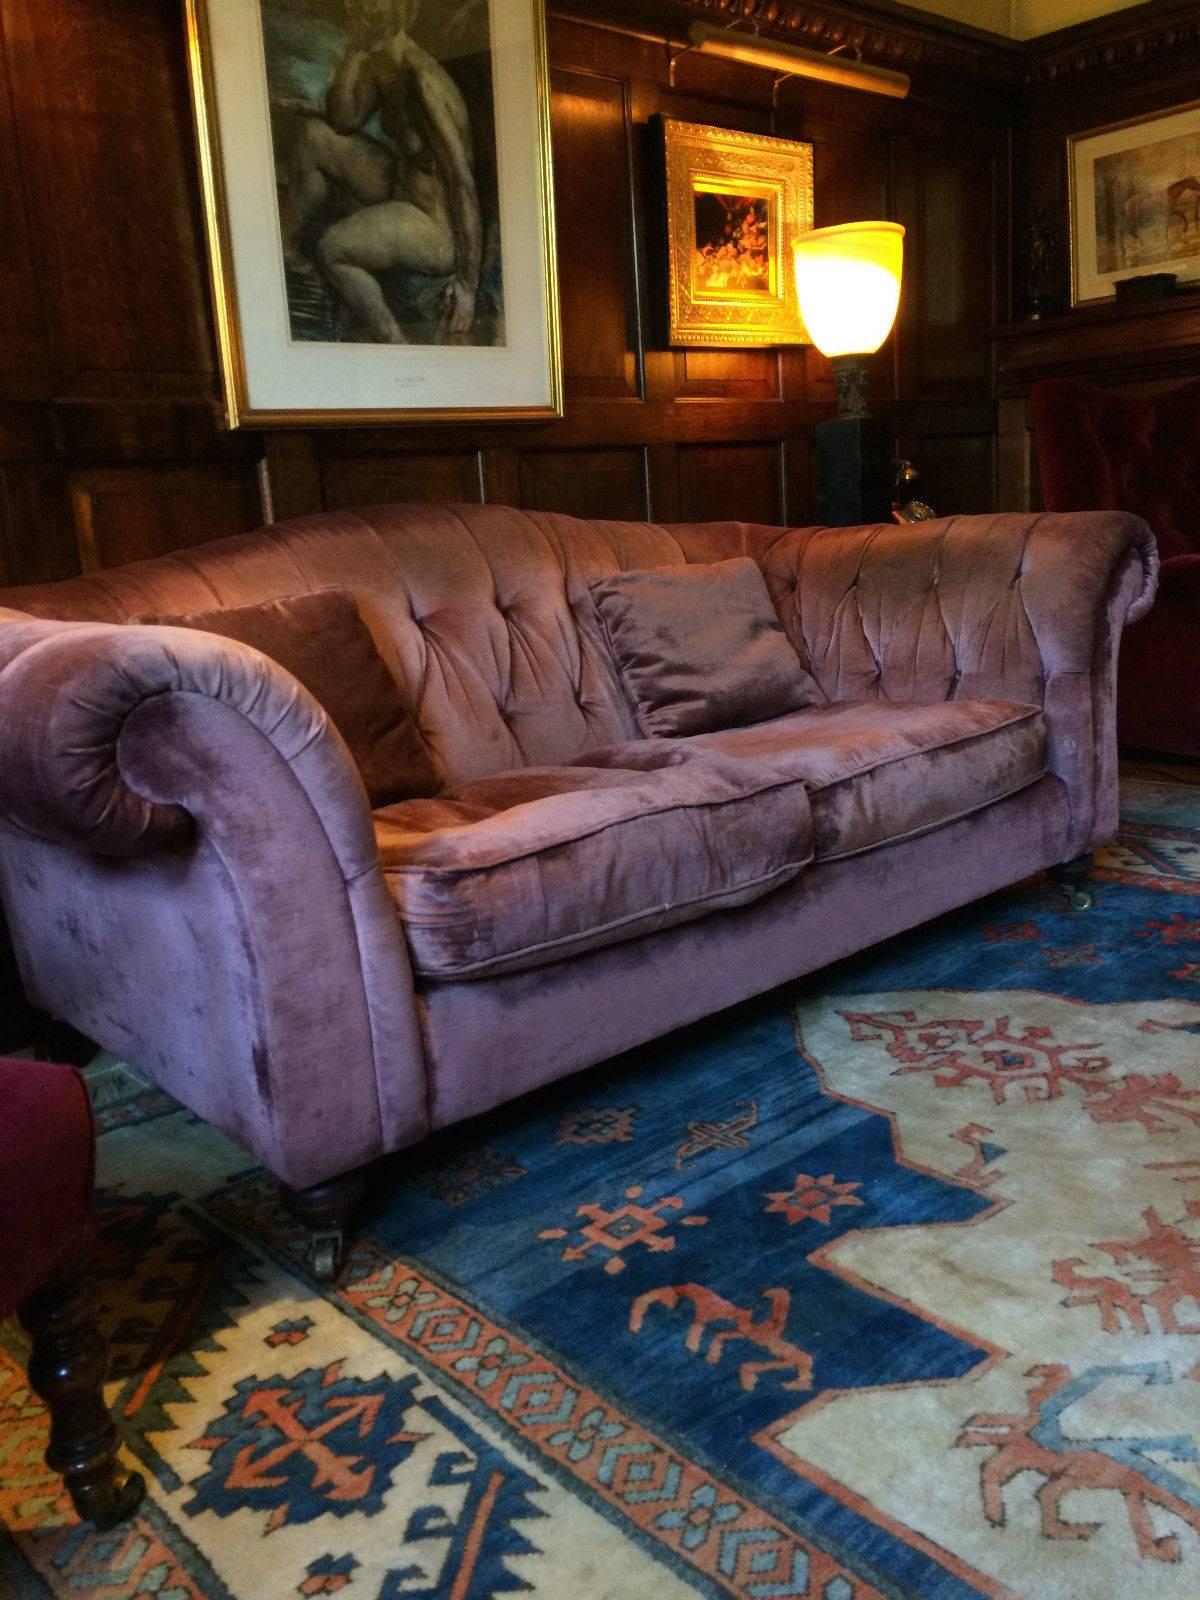 velvet chesterfield sofa